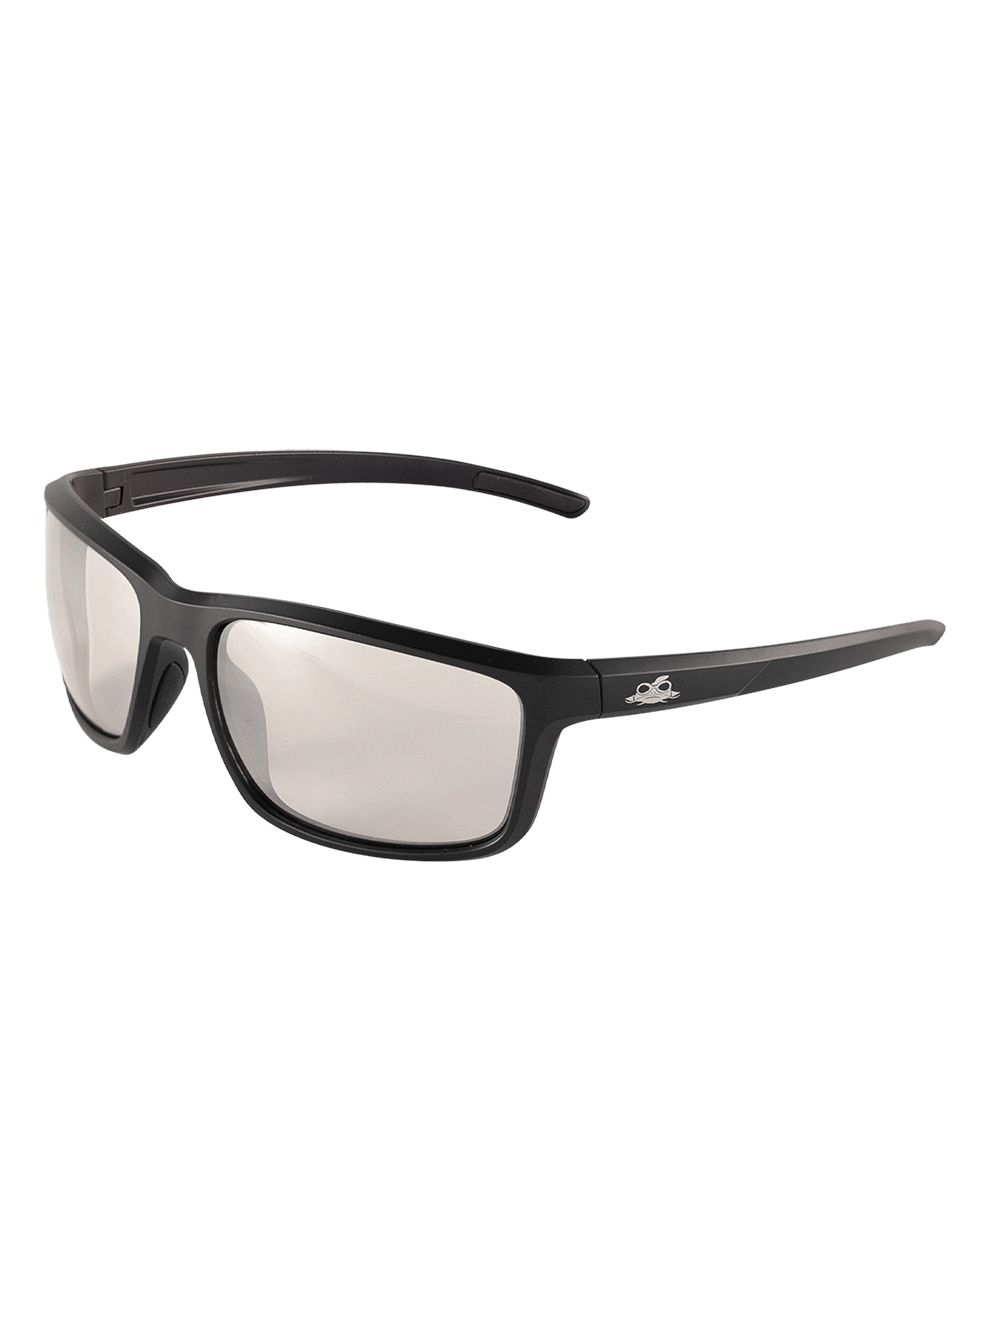 Pompano™ Indoor/Outdoor Anti-Fog Lens, Matte Black Frame Safety Glasses - BH2766AF